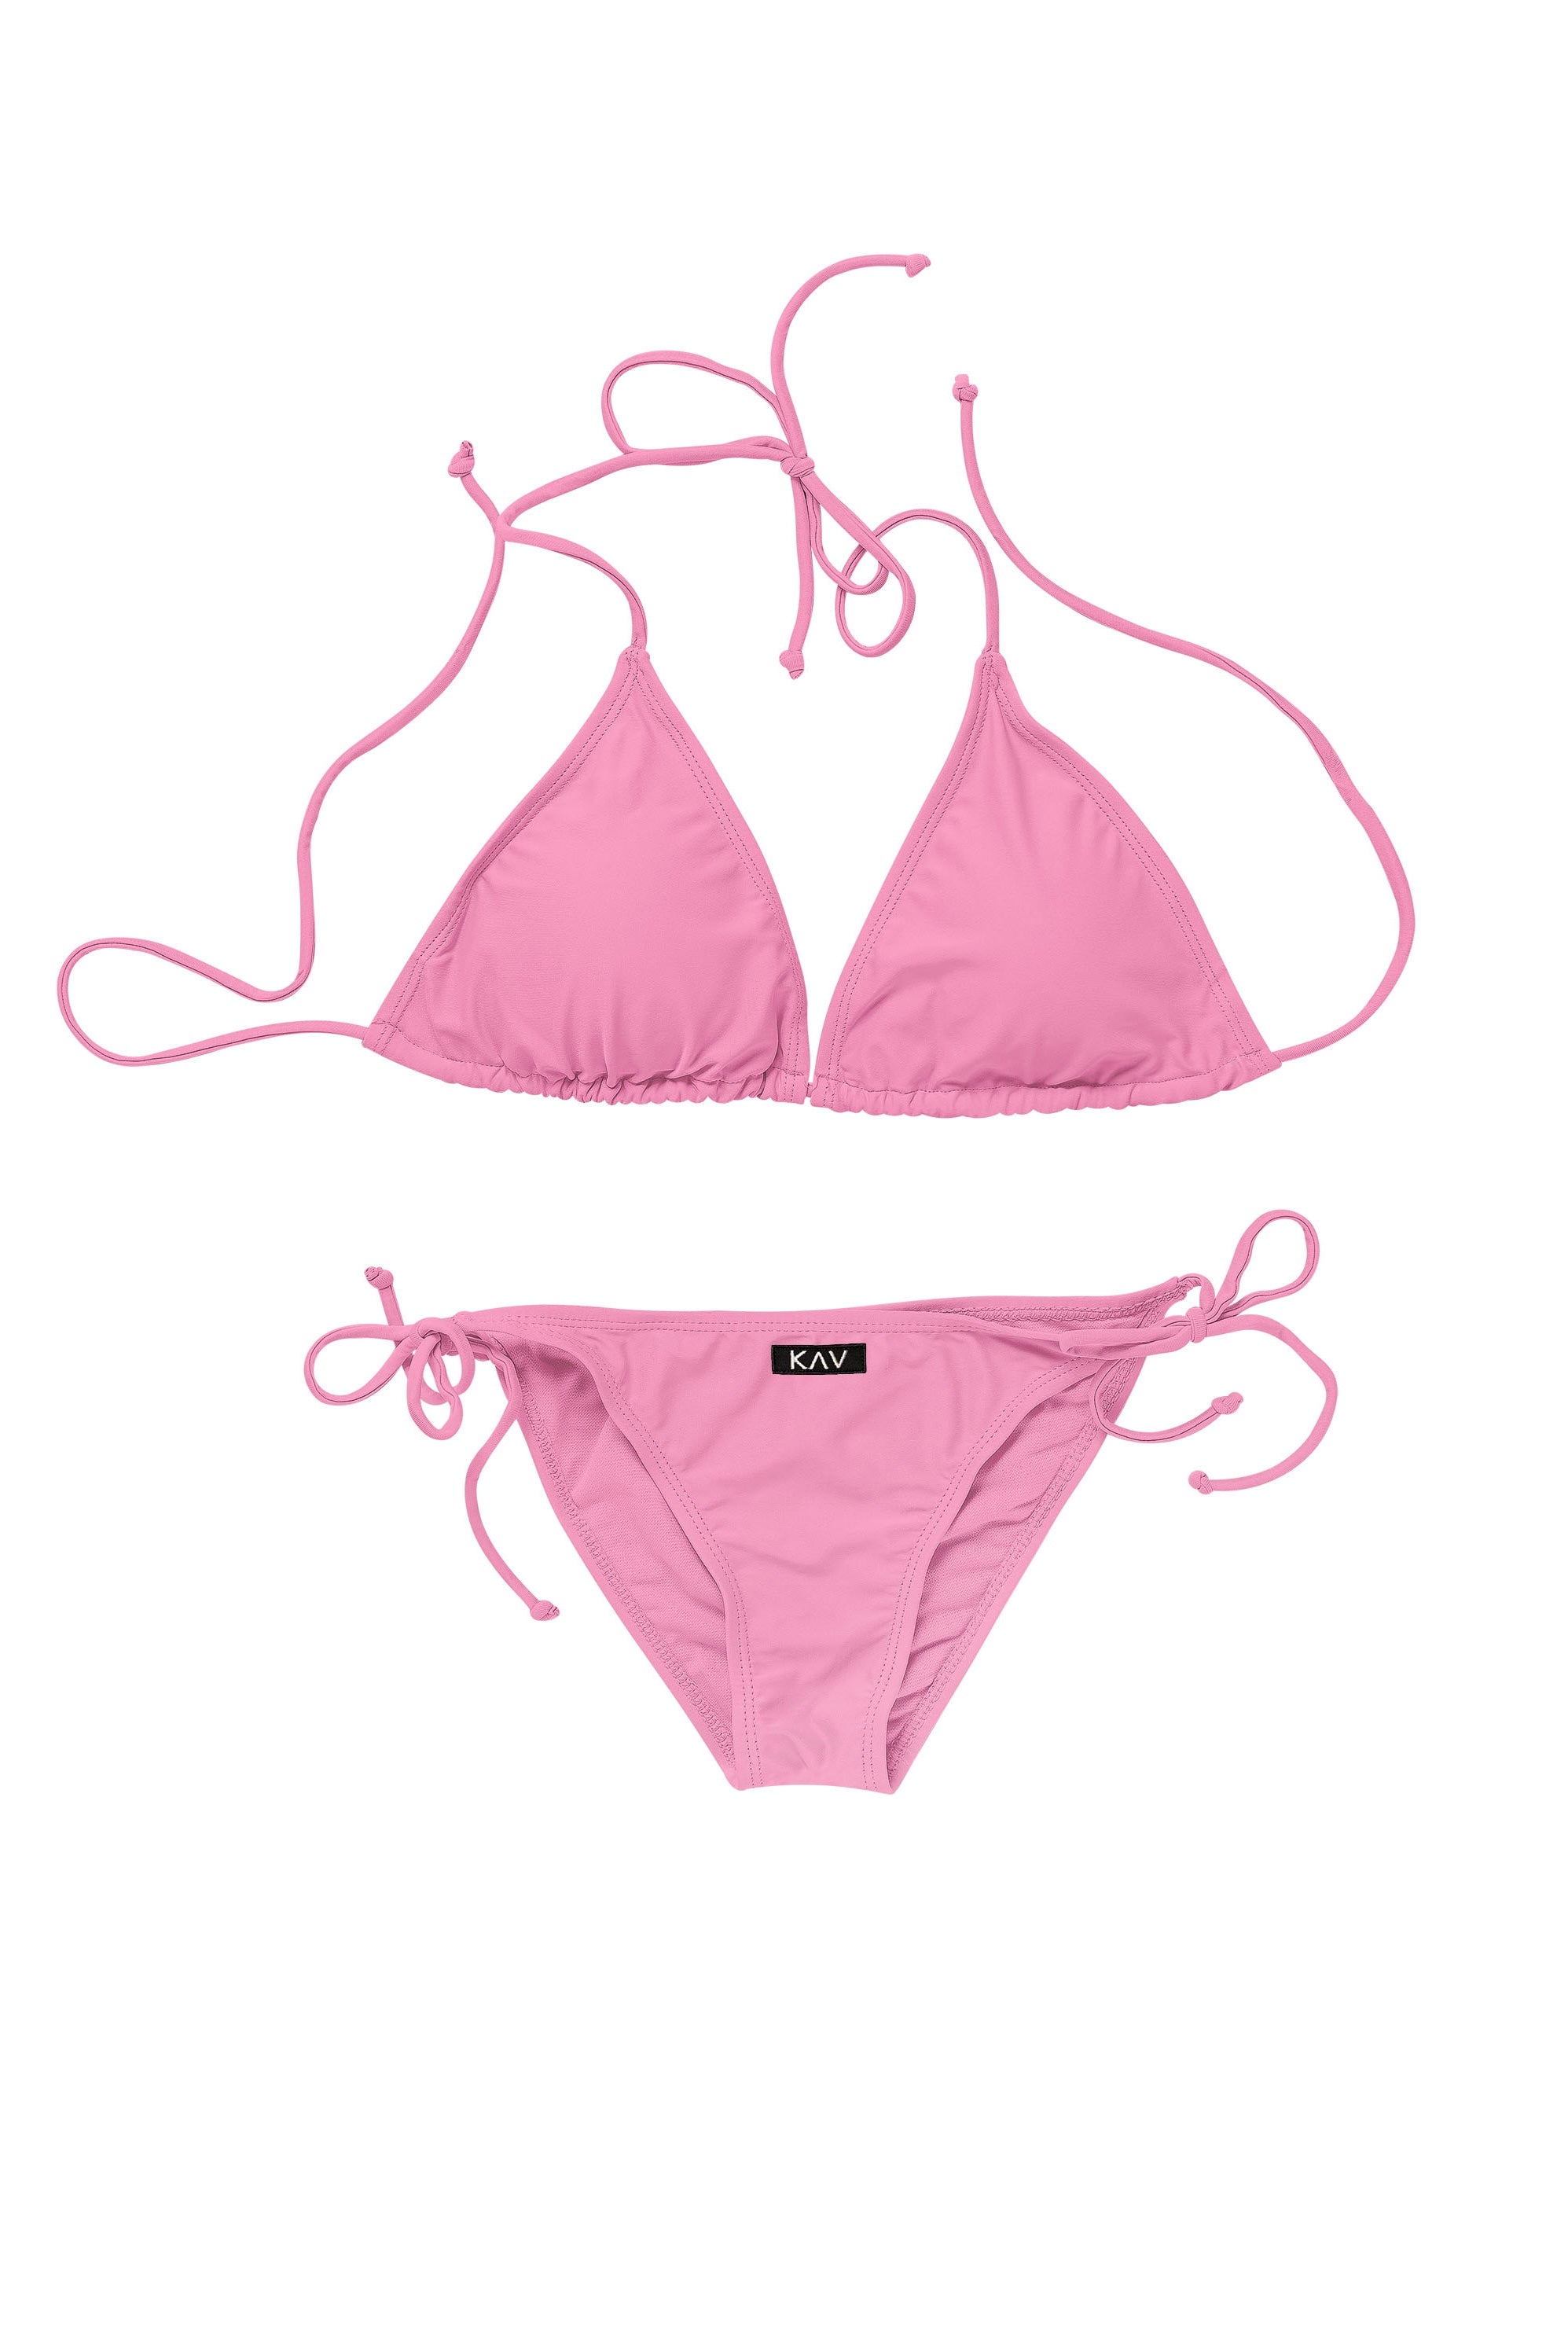 Minimal Pink Two Piece Triangle Bikini – KAV Wear